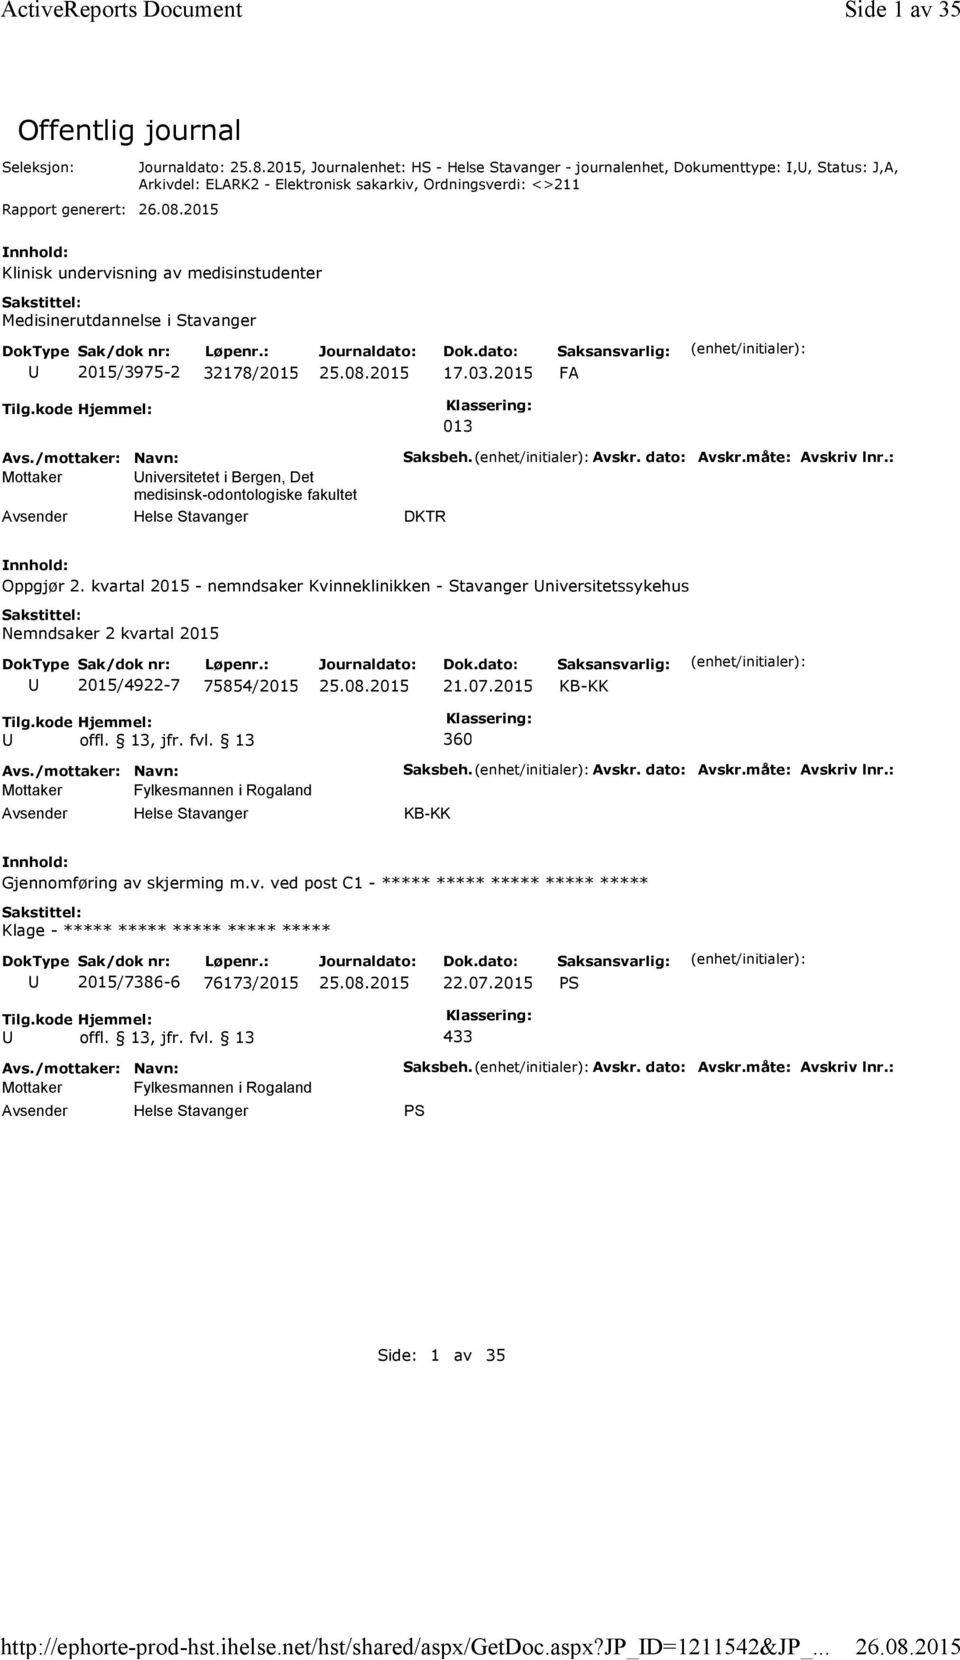 Medisinerutdannelse i Stavanger 2015/3975-2 32178/2015 17.03.2015 FA Tilg.kode Hjemmel: 013 Mottaker niversitetet i Bergen, Det medisinsk-odontologiske fakultet Saksbeh. Avskr. dato: Avskr.